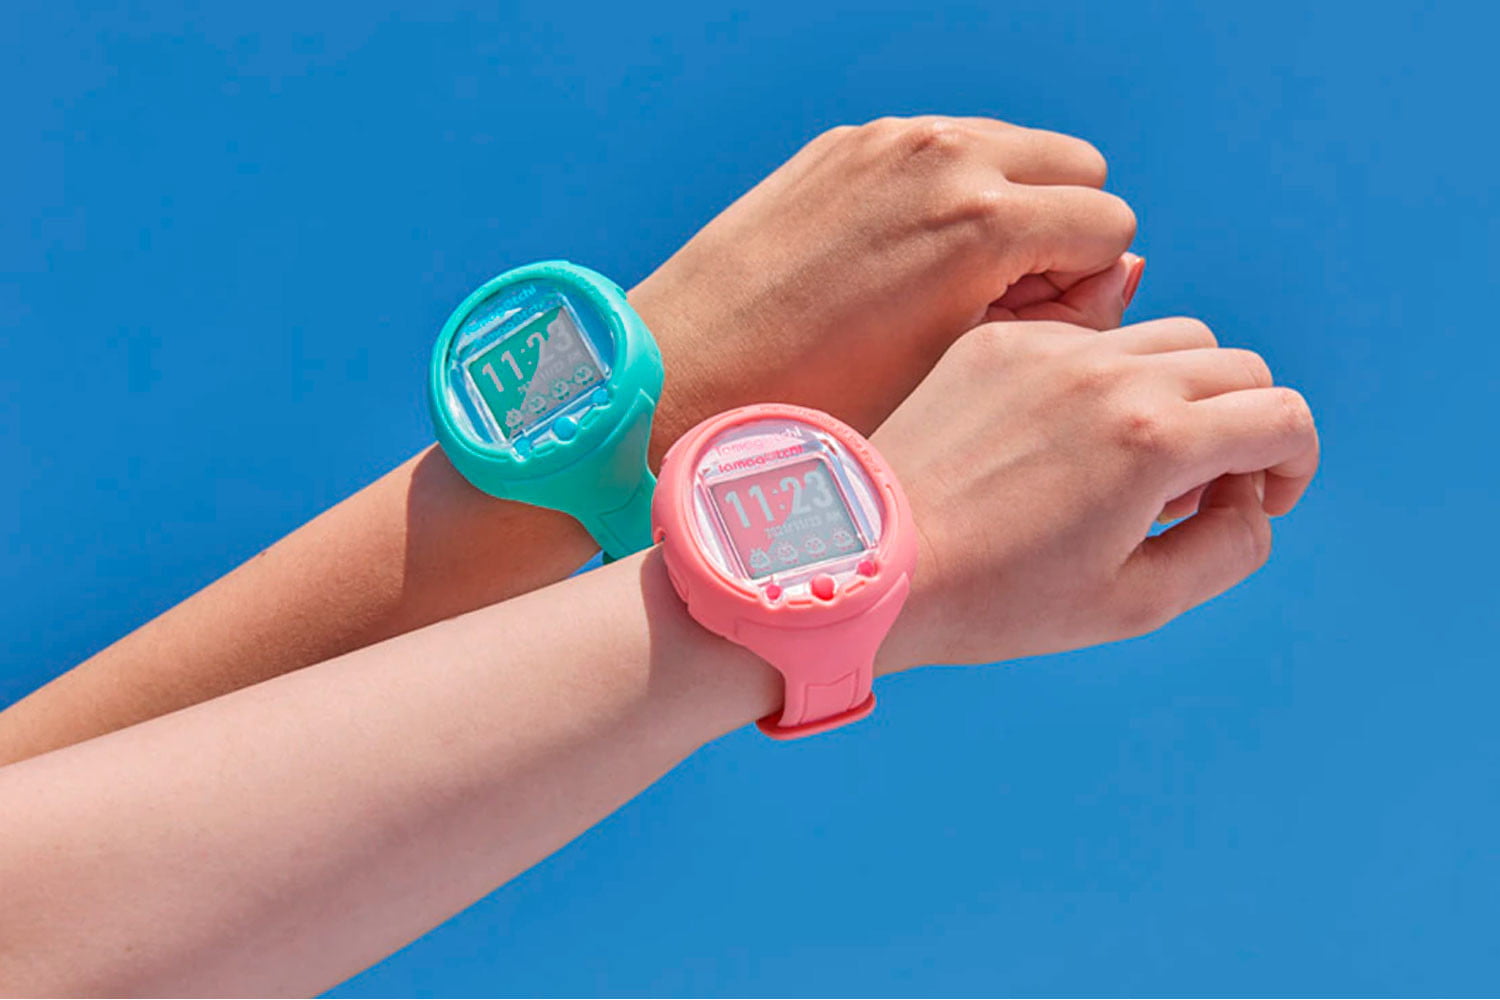 Tamagochi regresa en su 25 aniversario en formato de smartwatch